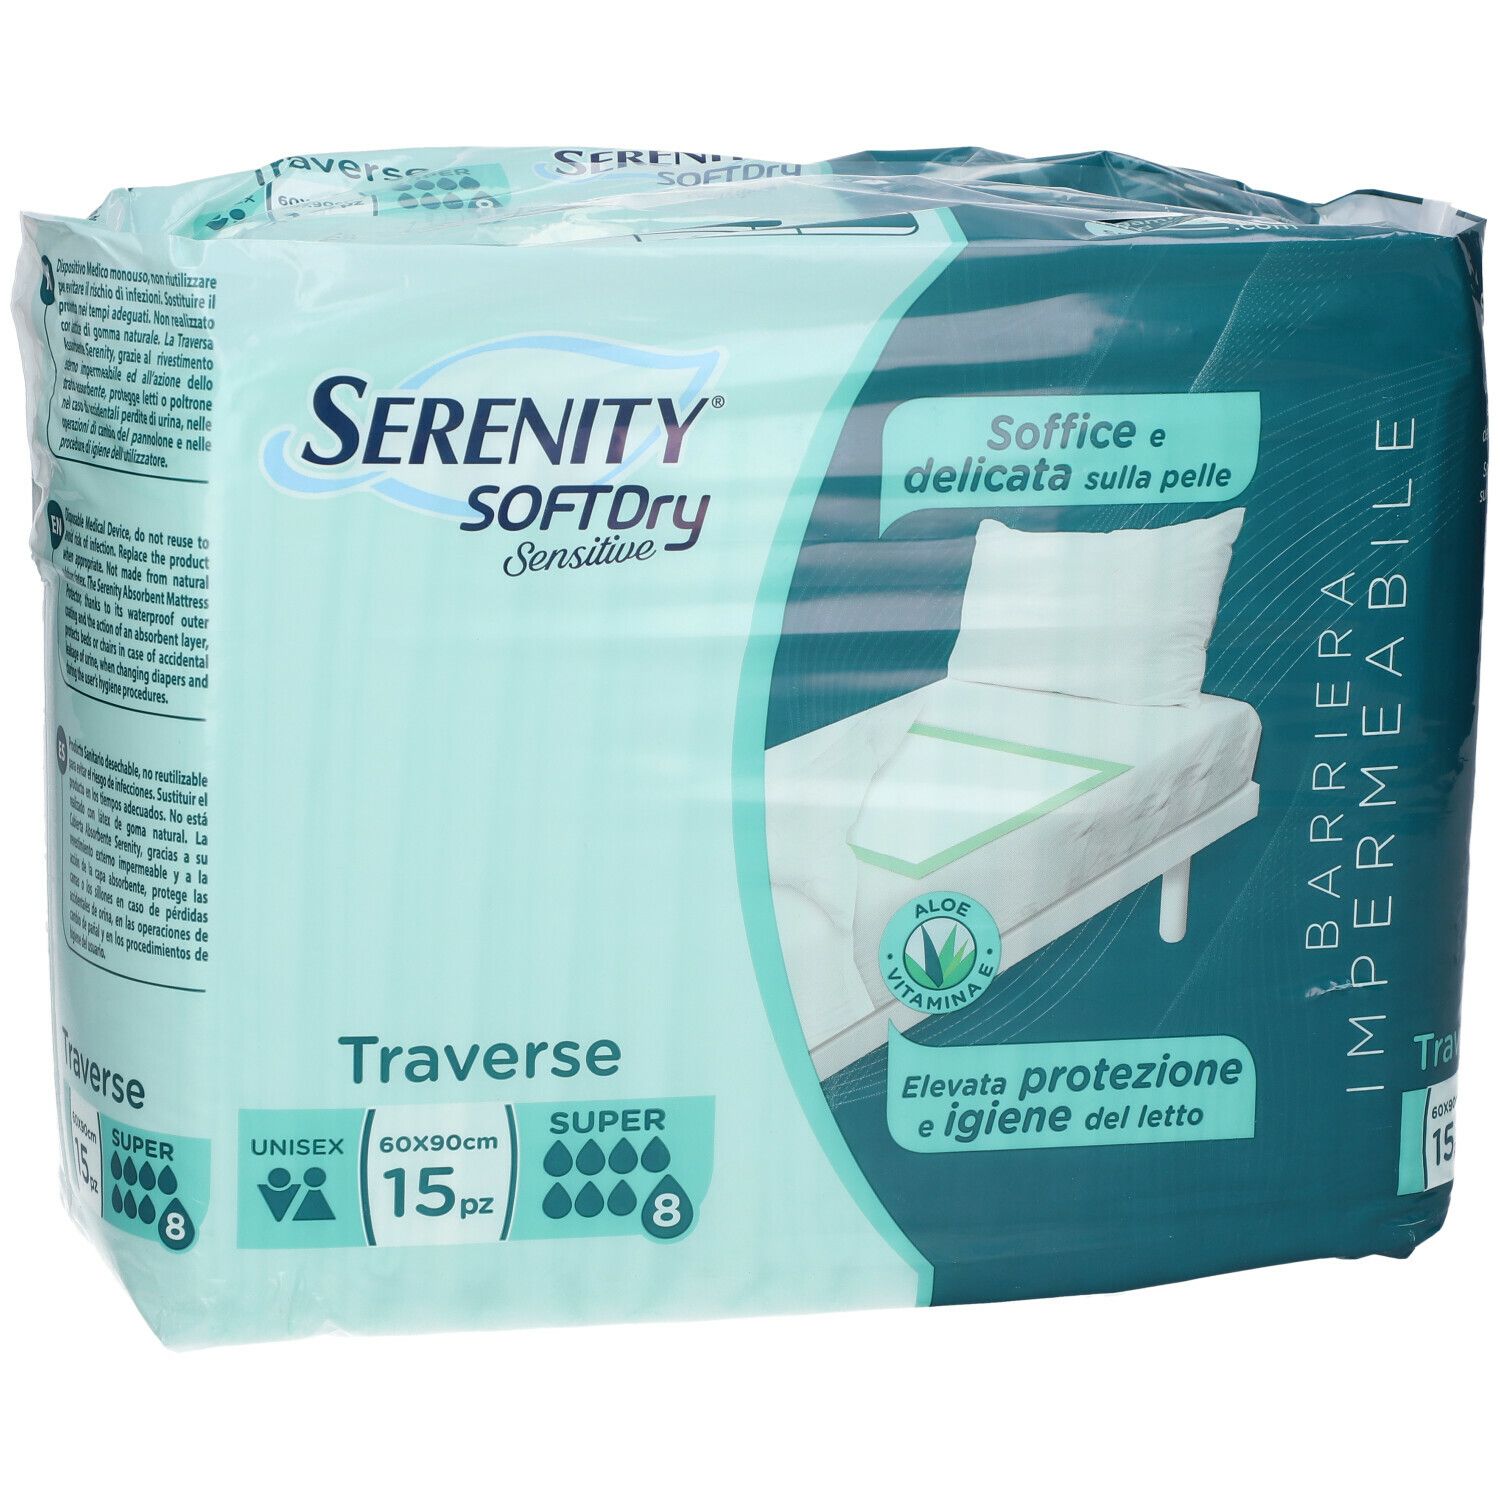 Serenity SoftDRY Sensitive Traversa